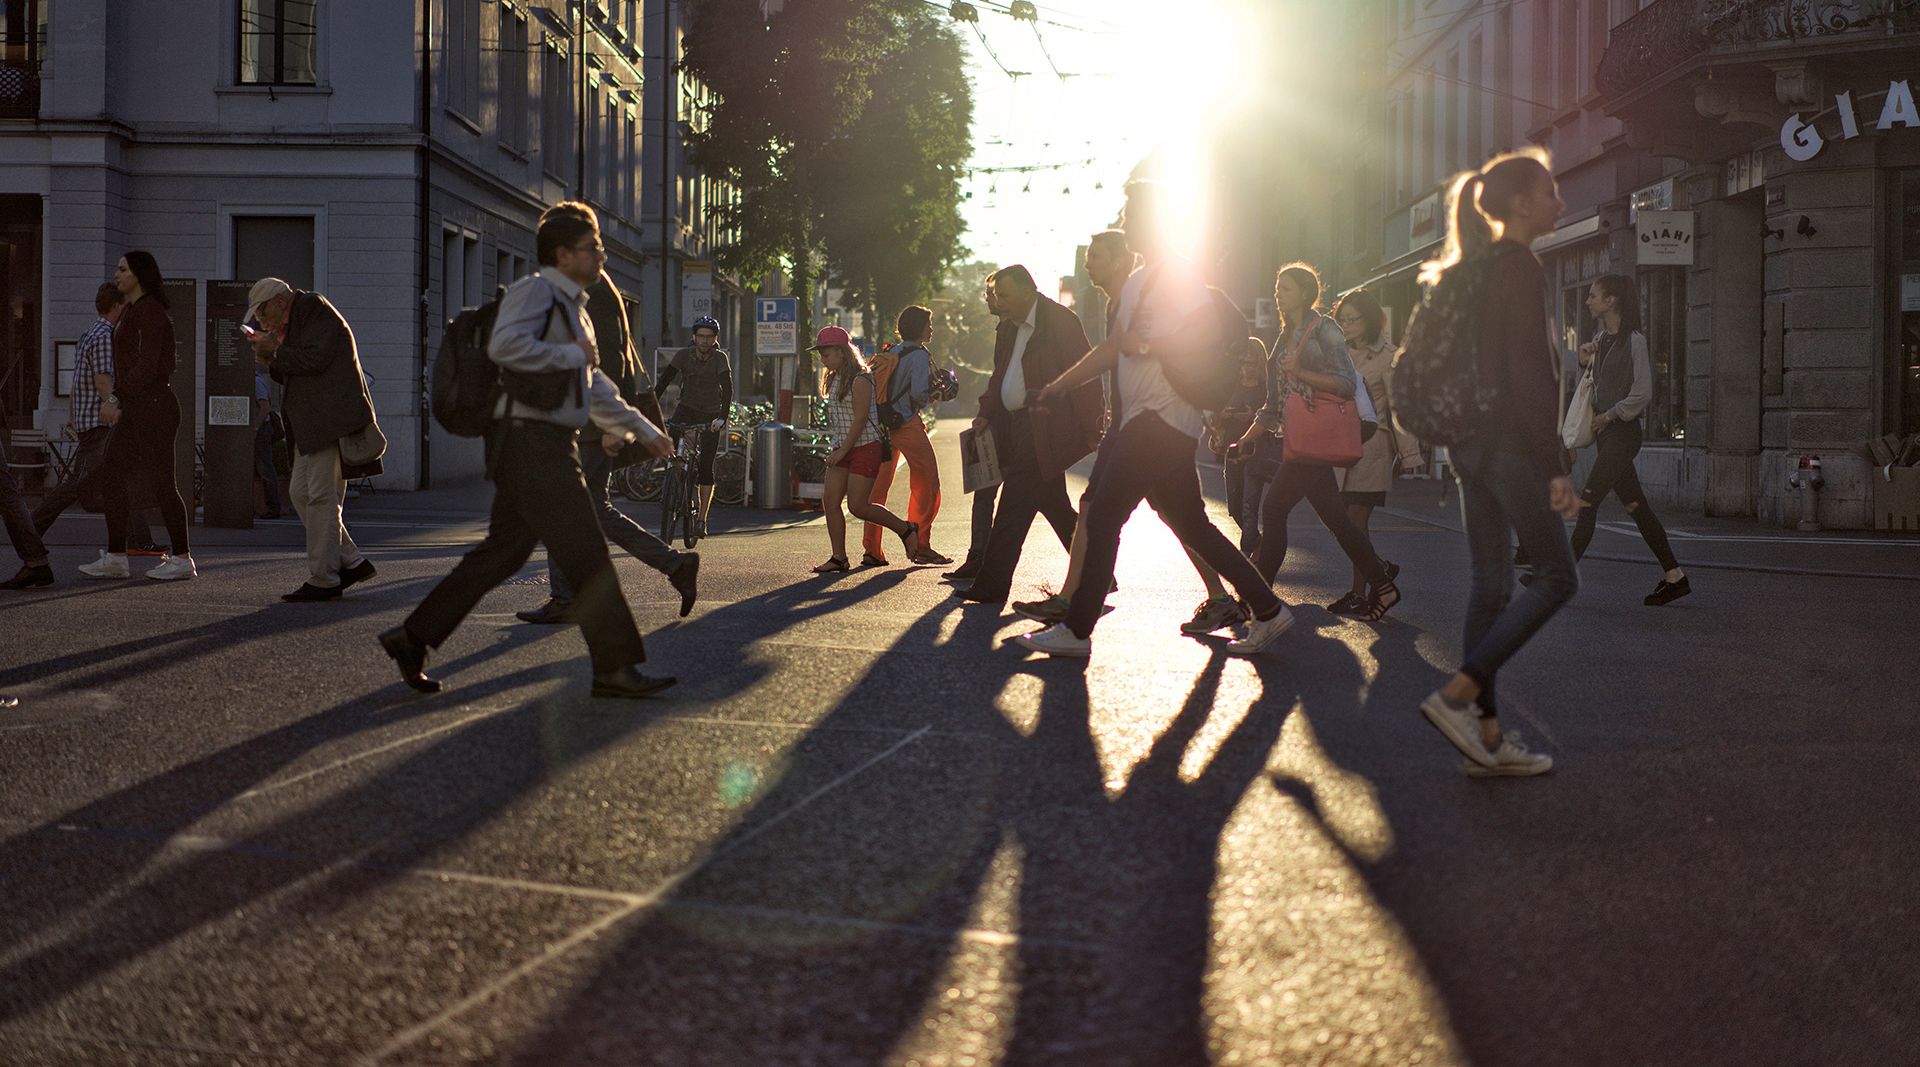 Foto della 'Bahnhofplatz di Winterthur' con persone in movimento